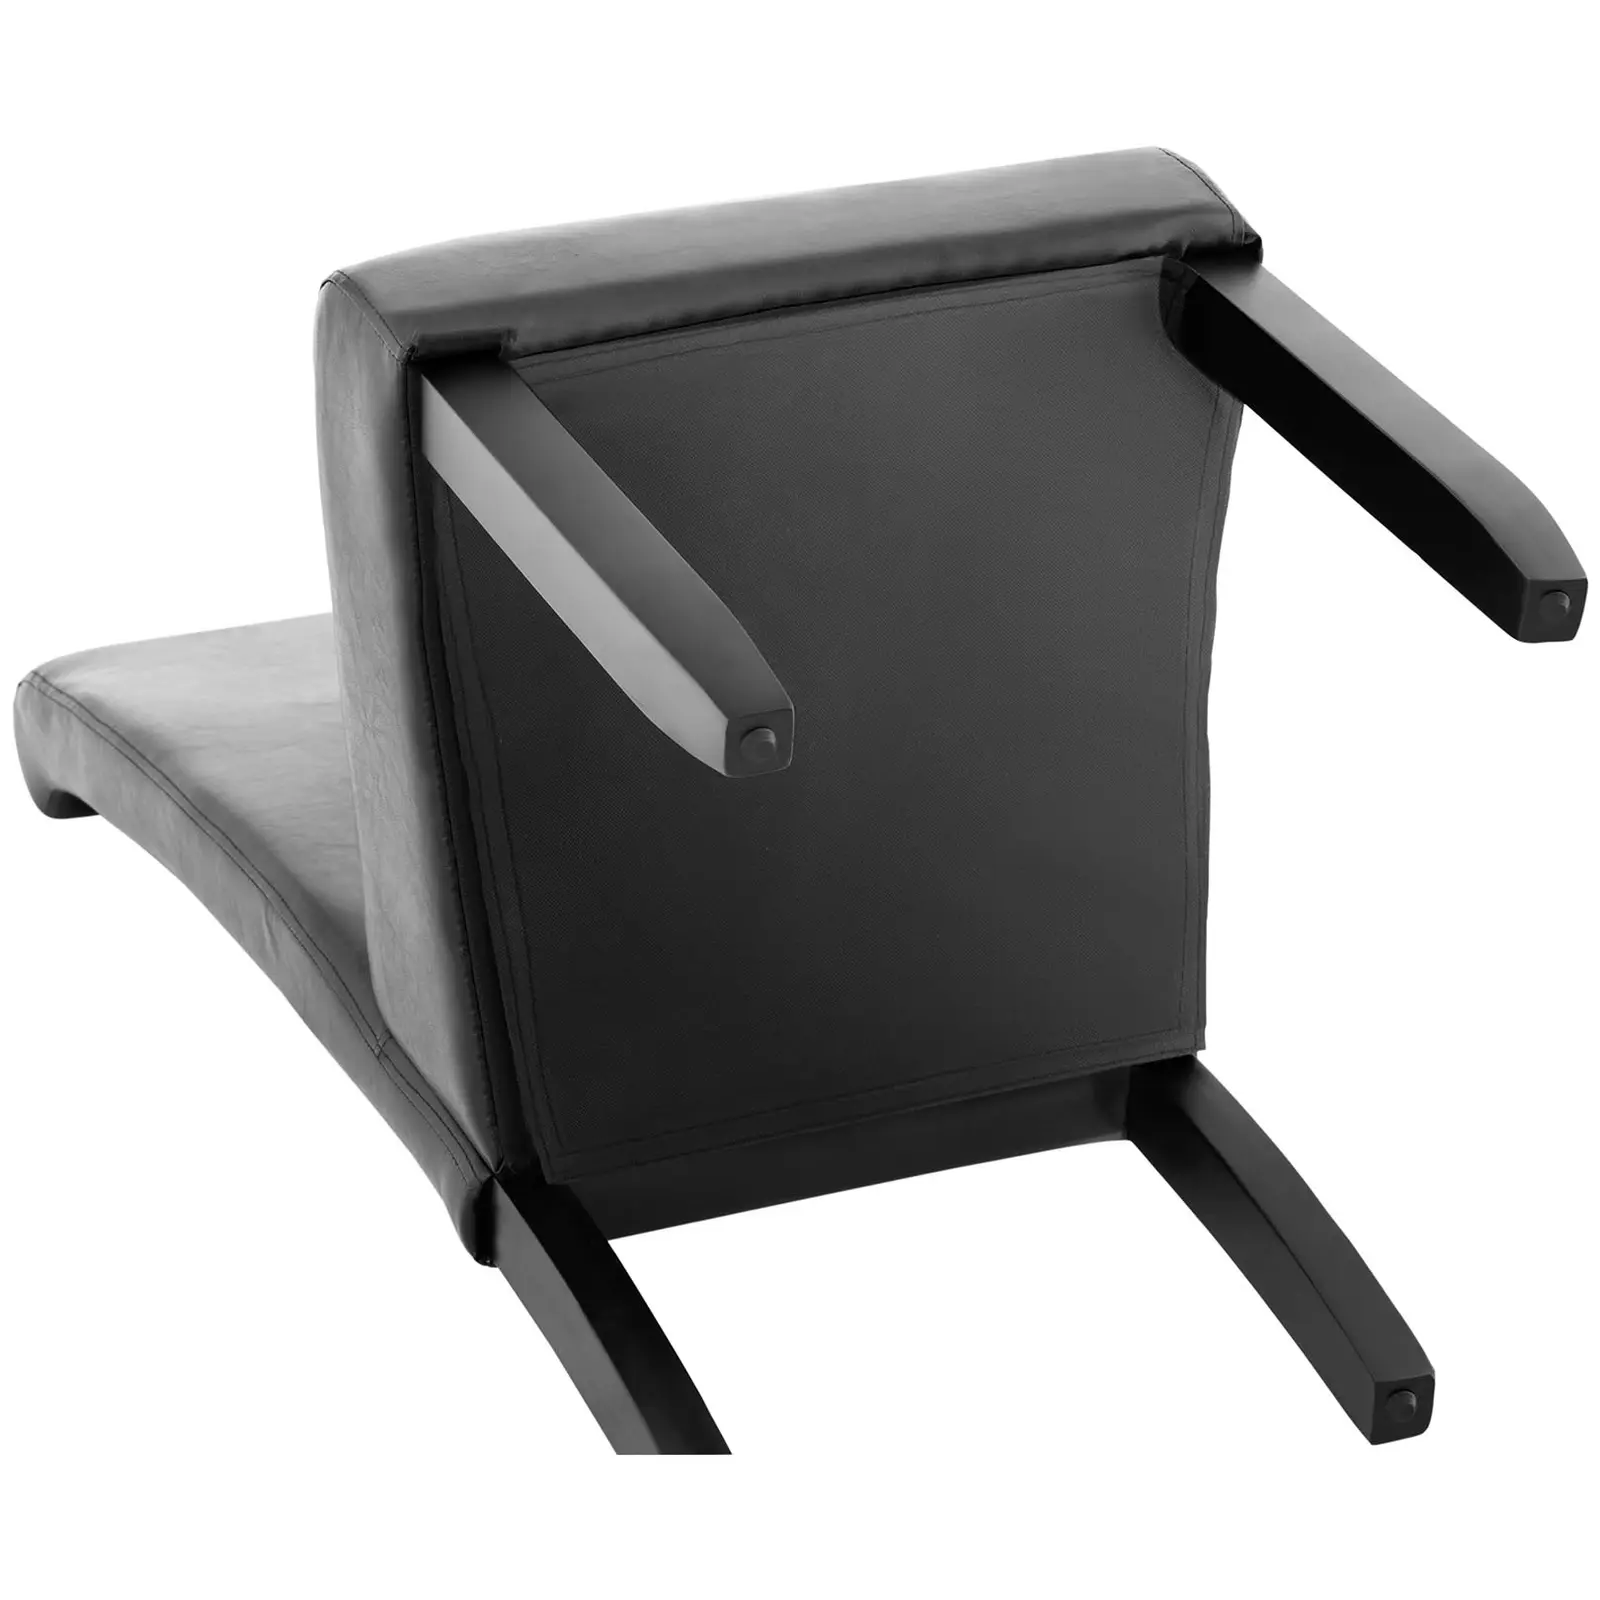 Čalouněná židle- sada 2 kusů - do 180 kg - sedací plocha 44,5 x 44 cm - černá